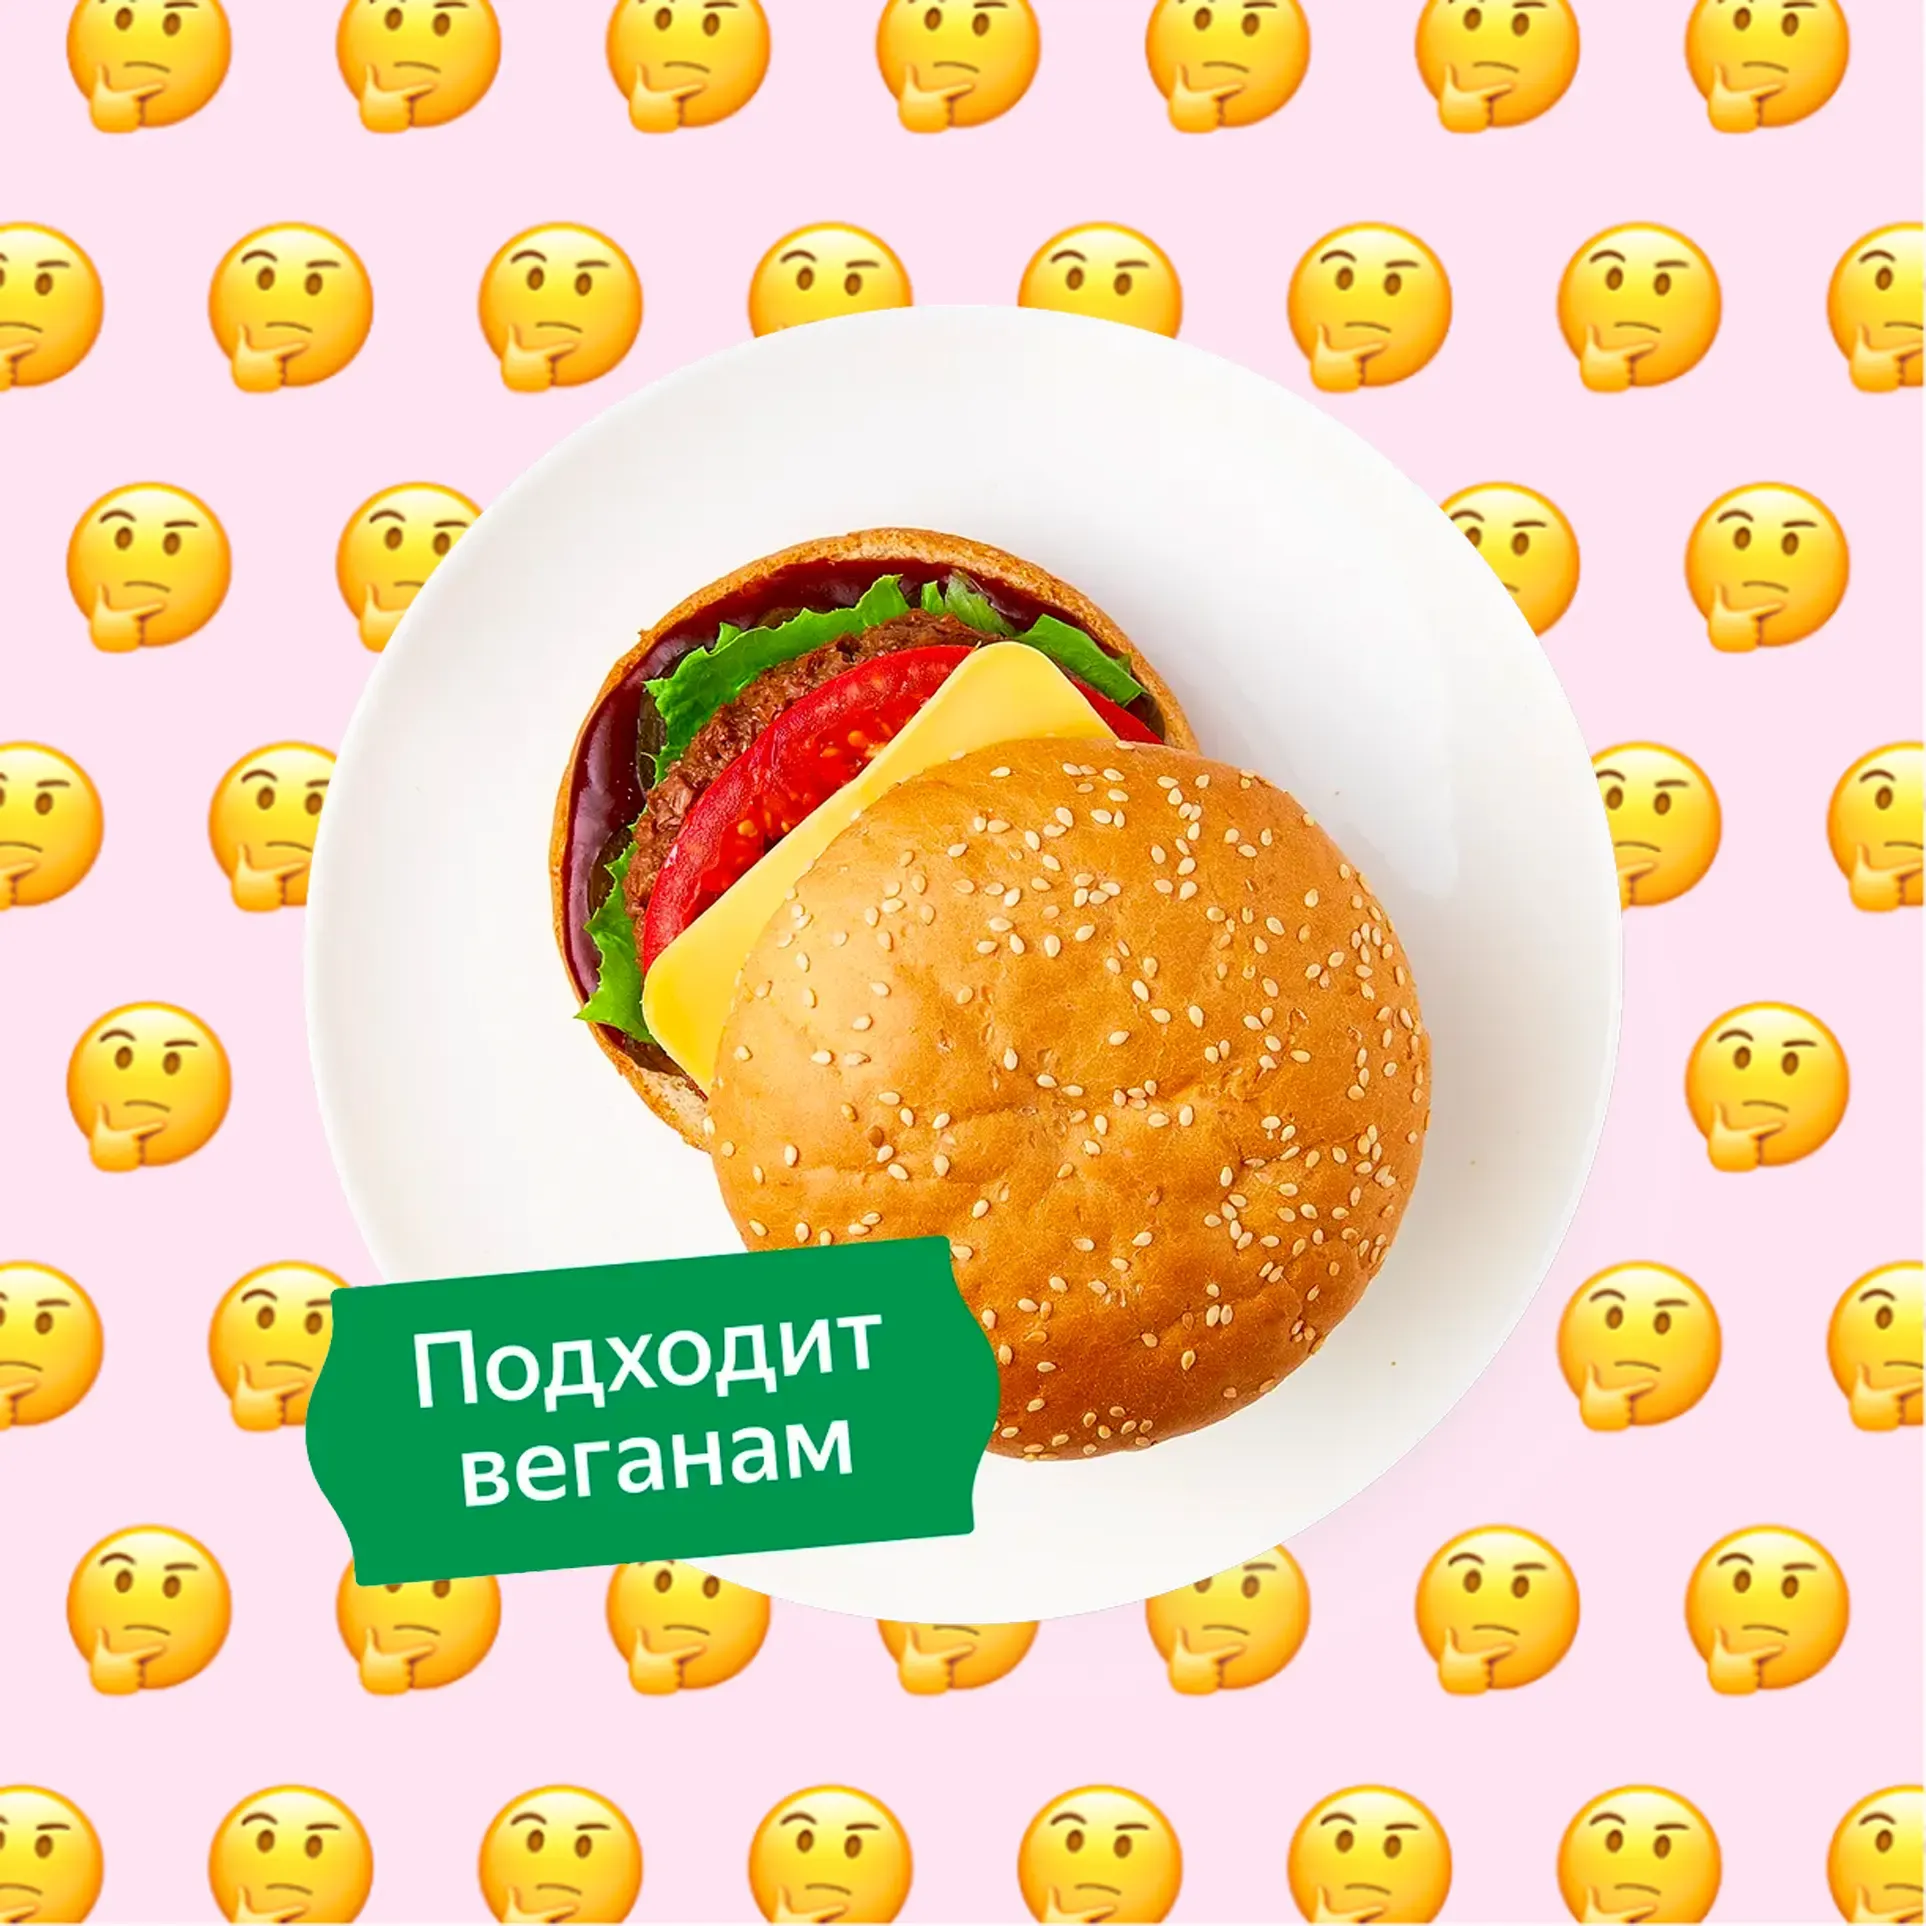 По вегану ли гамбургер Барбекю с растительной котлетой из Яндекс Лавки?